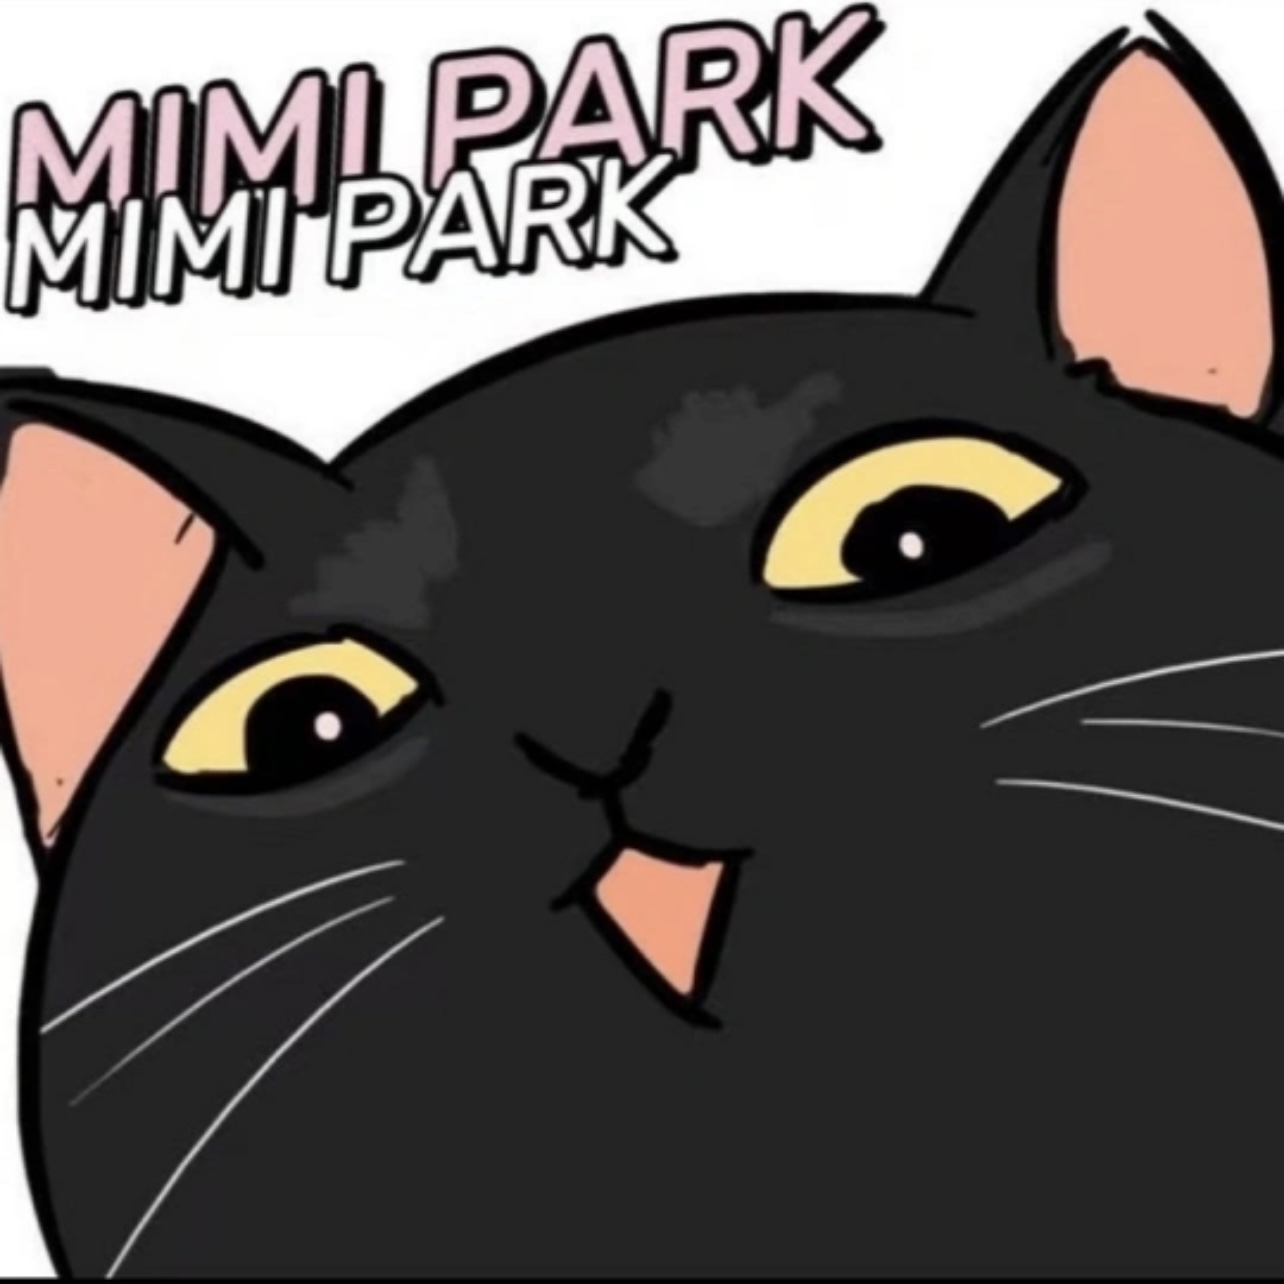 Mimipark